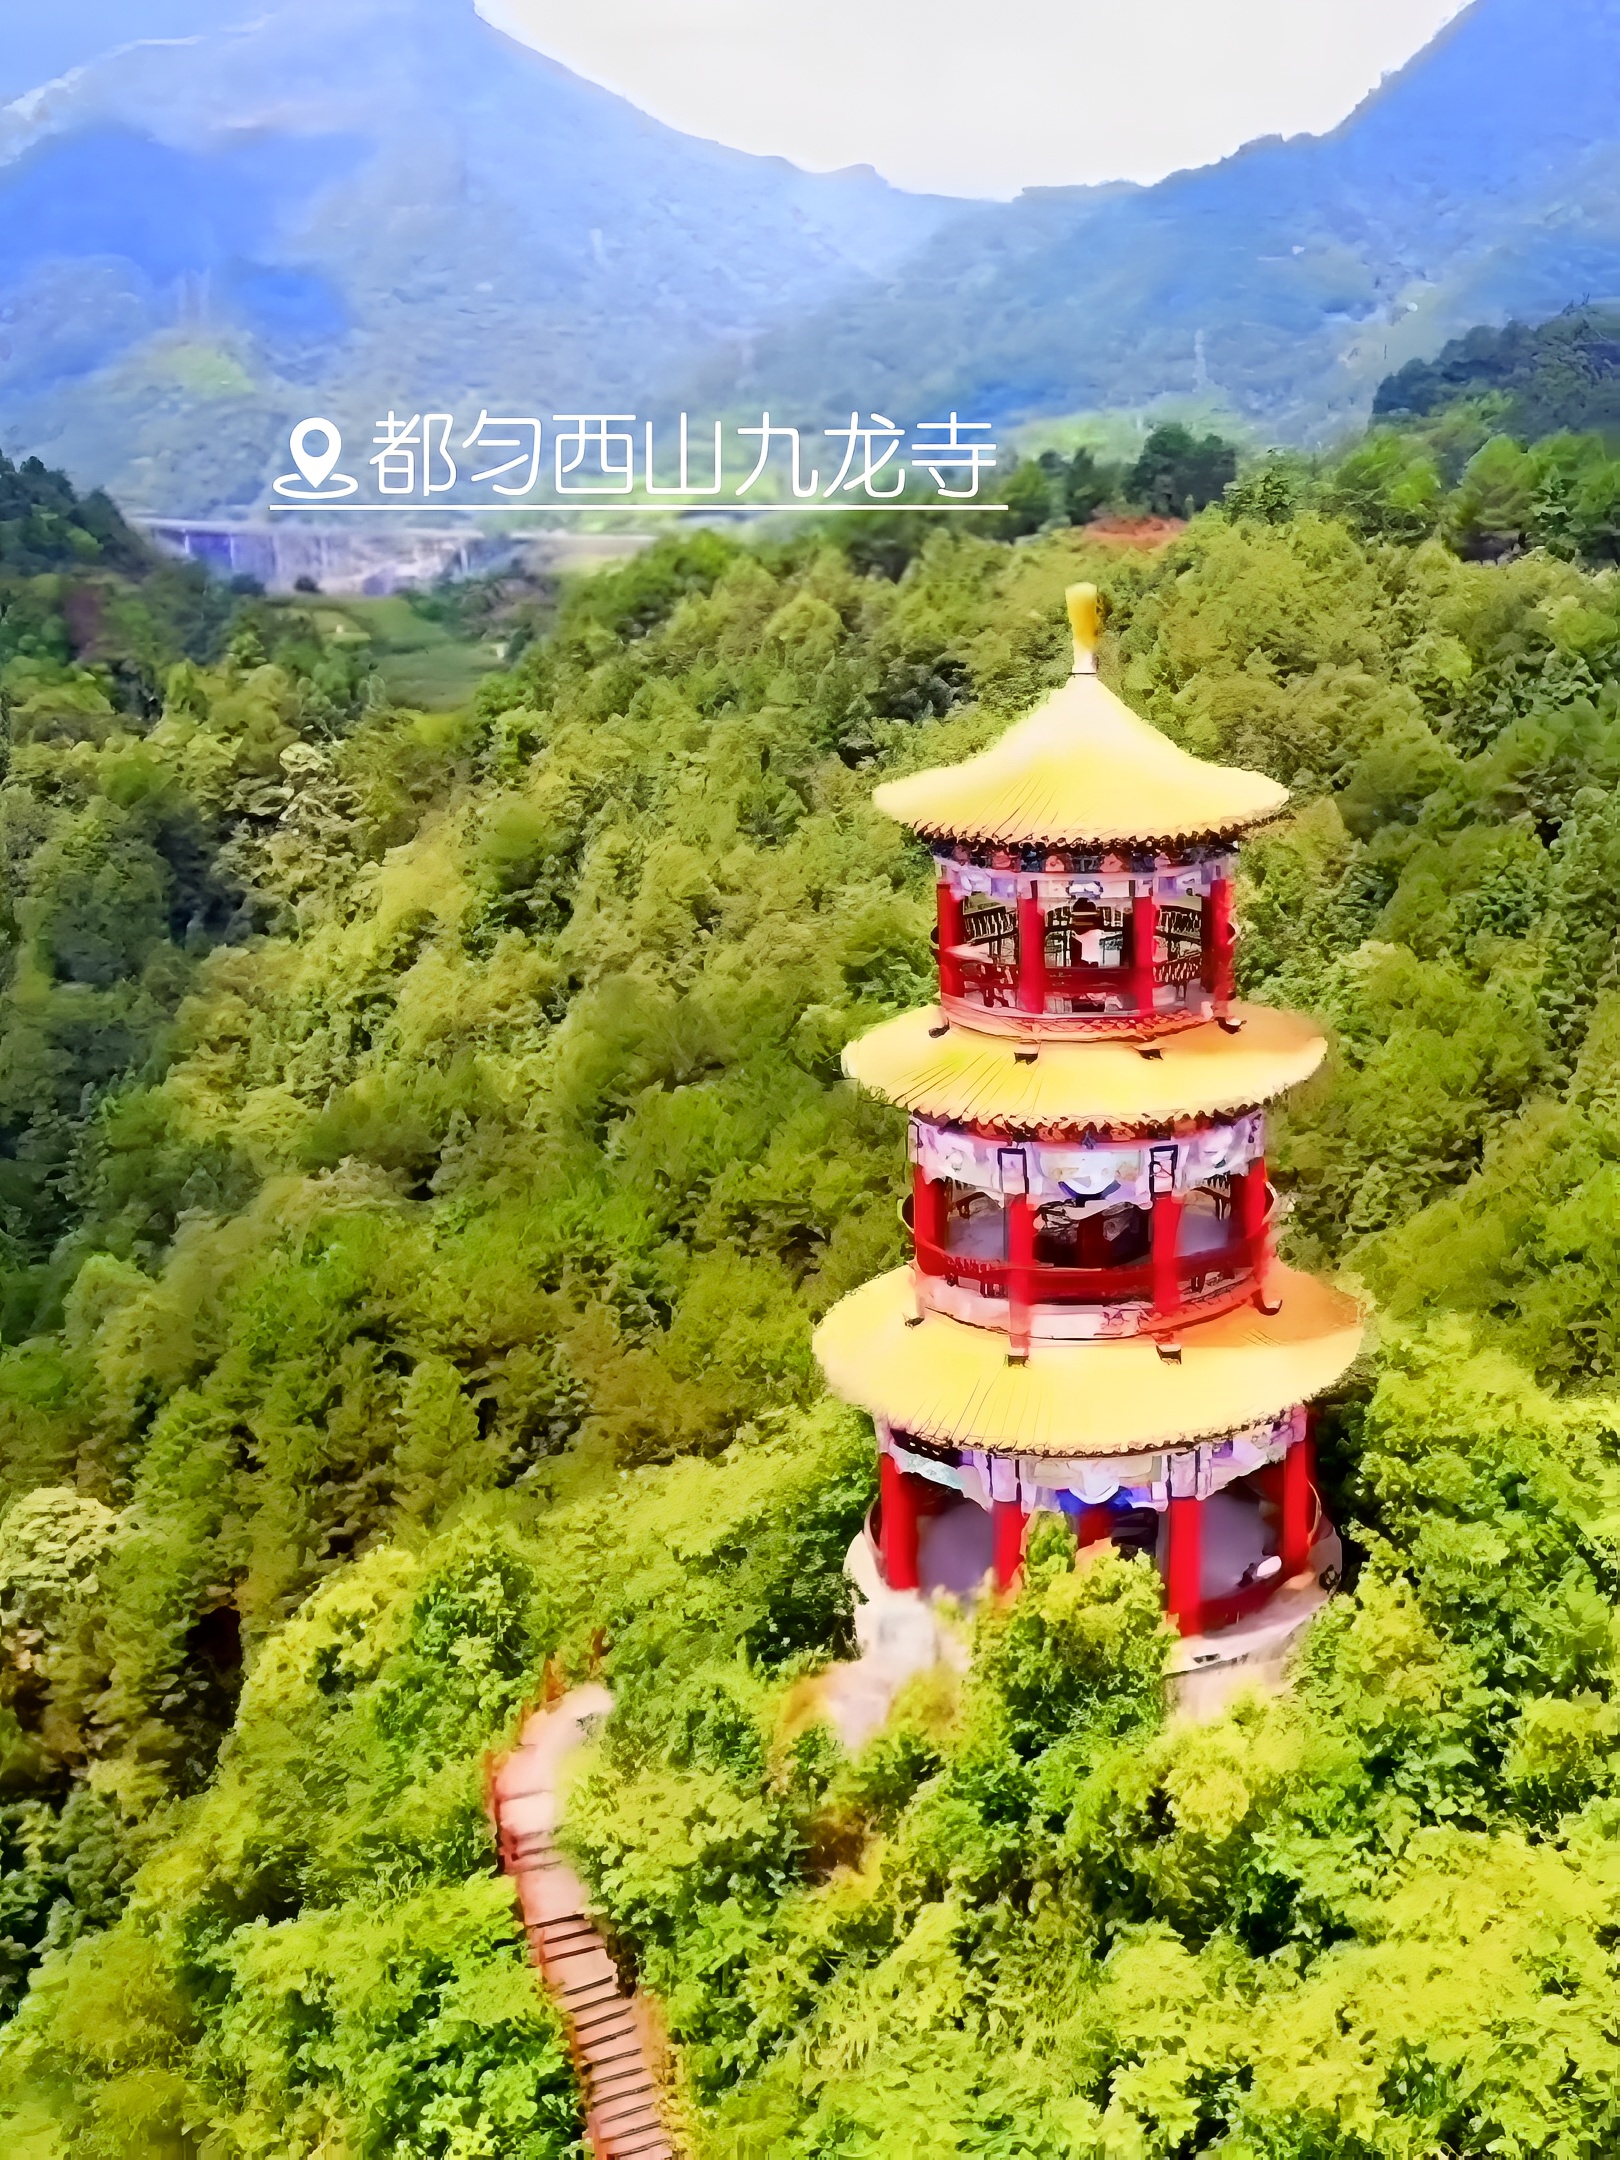 与您同行环游世界游玩西山九龙寺！